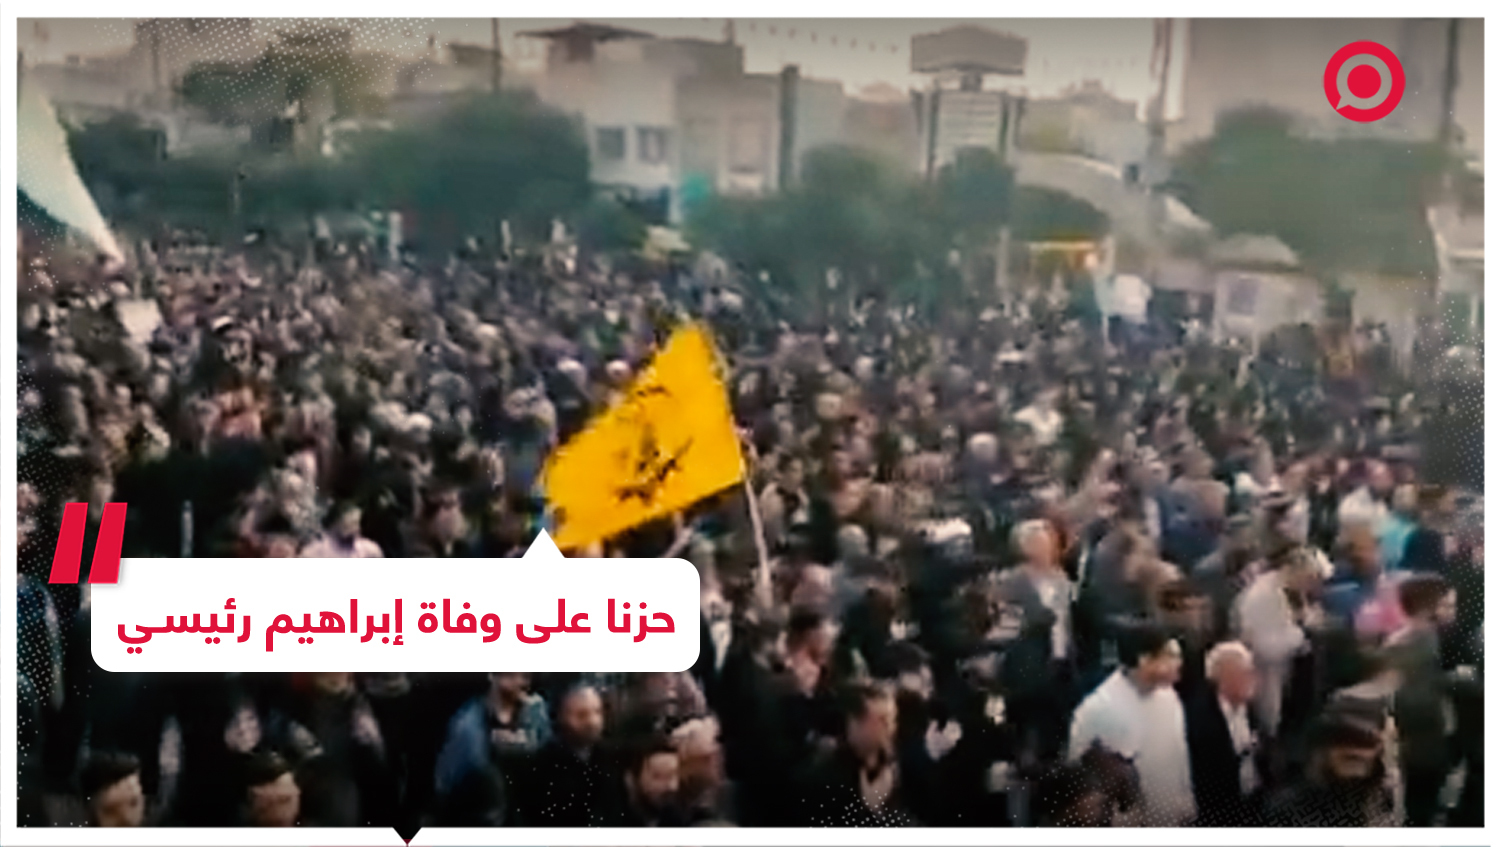 الآلاف يخرجون في مسيرات حزنا على وفاة إبراهيم رئيسي